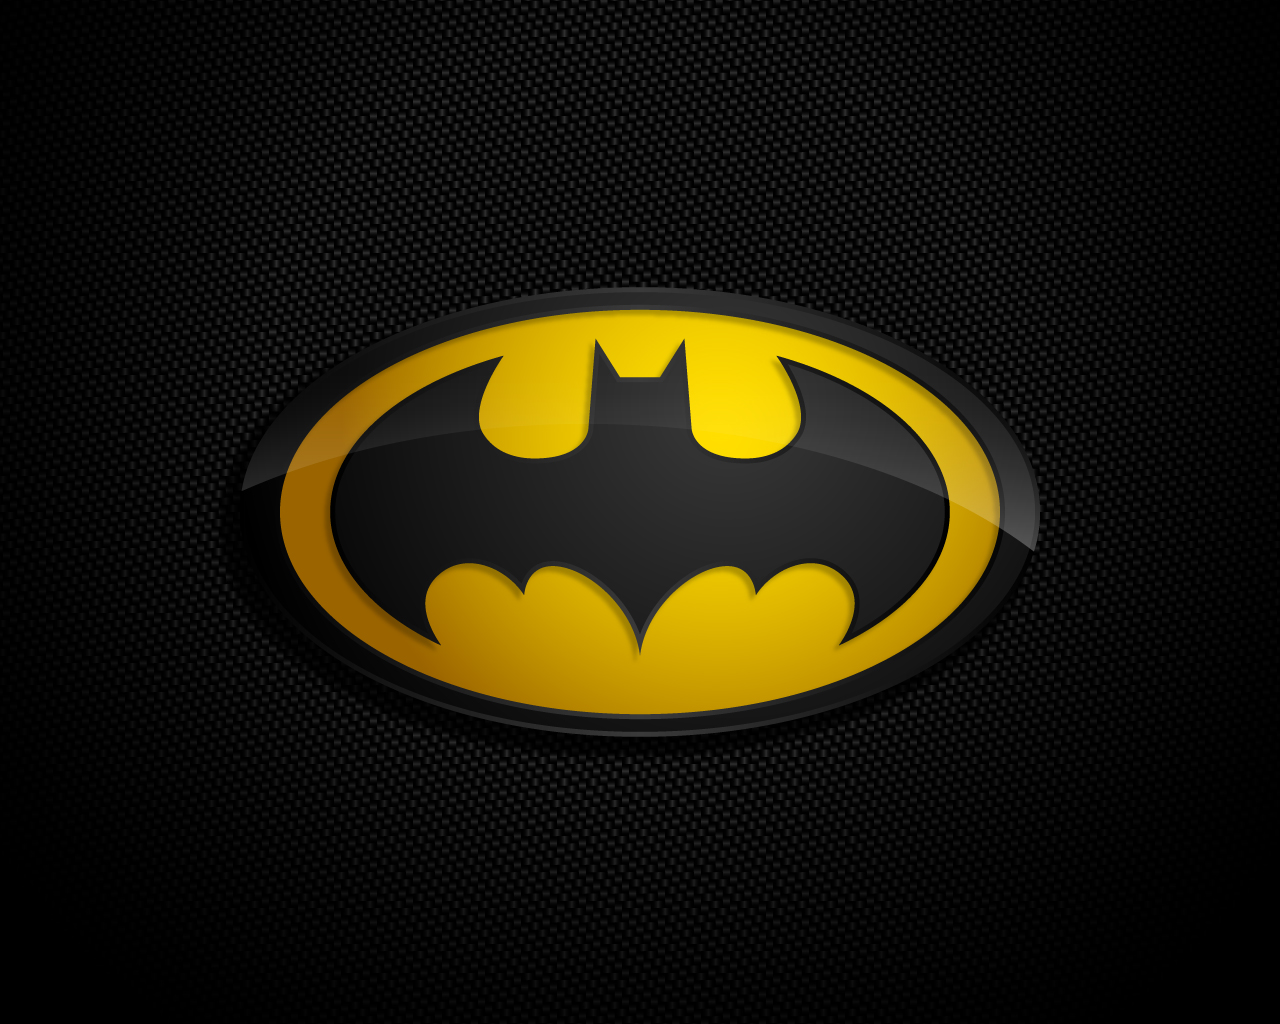 Batman achtergronden hd batman wallpapers afbeelding 28jpg